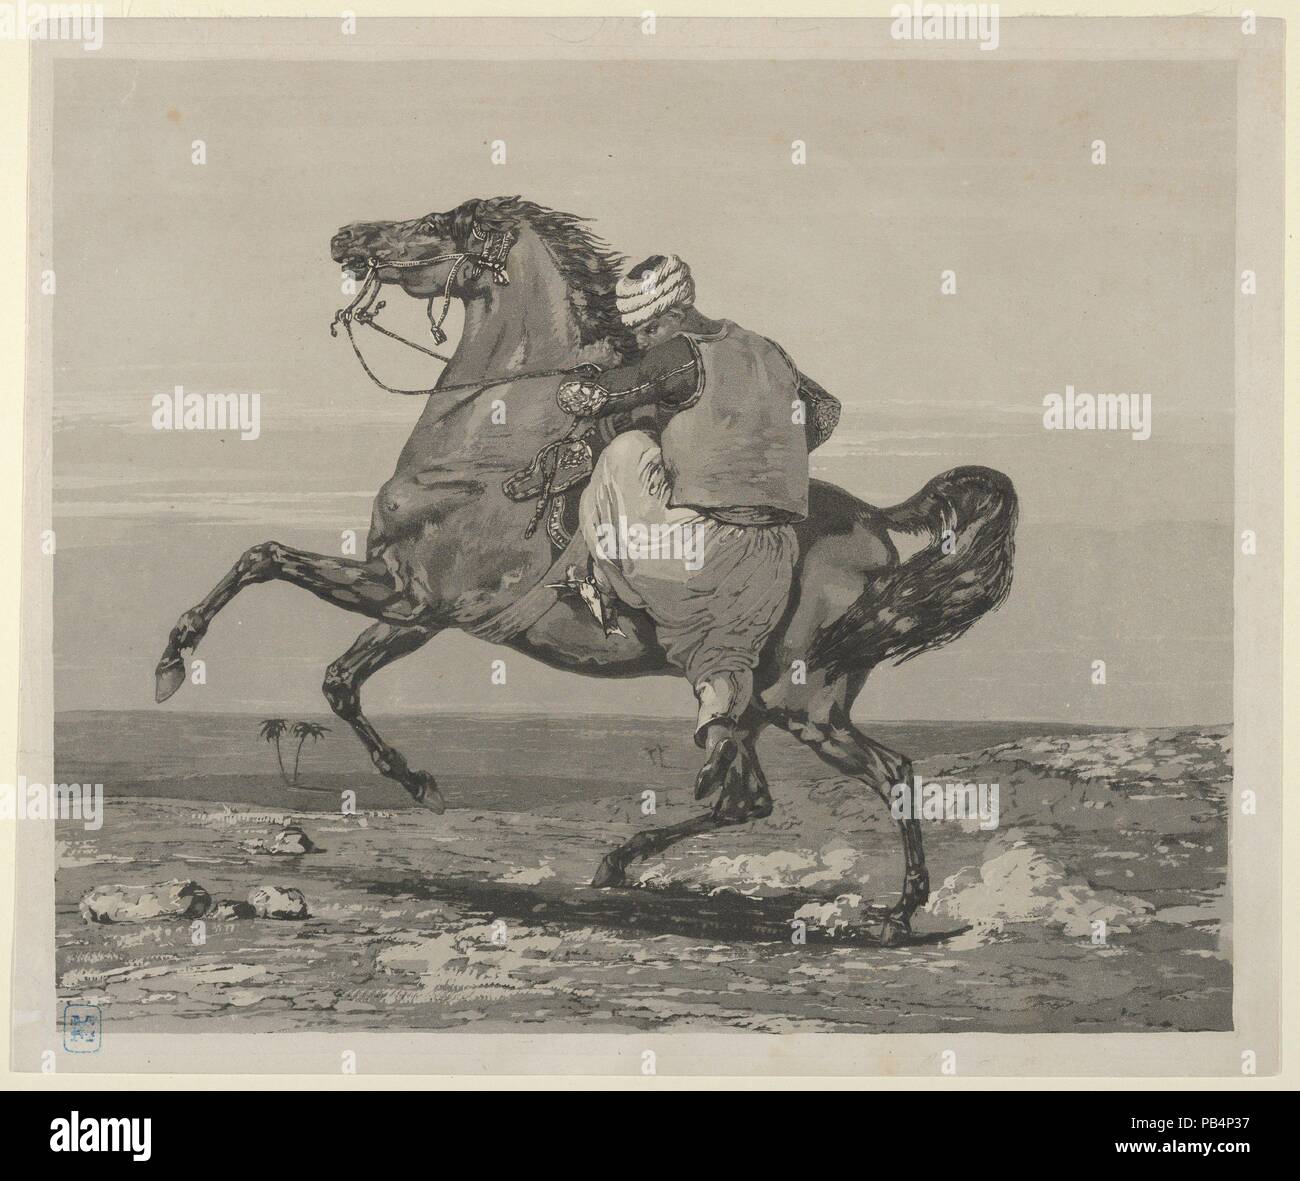 Montage Turk son cheval. Artiste : Eugène Delacroix (Français, Charenton-Saint-Maurice 1798-1863 Paris). Dimensions : Image : 8 9/16 × 10 3/8 in. (21,8 × 26,4 cm) Feuille : 9 × 5/16 11 3/16 po. (23,6 × 28,4 cm). Date : 1824. Musée : Metropolitan Museum of Art, New York, USA. Banque D'Images